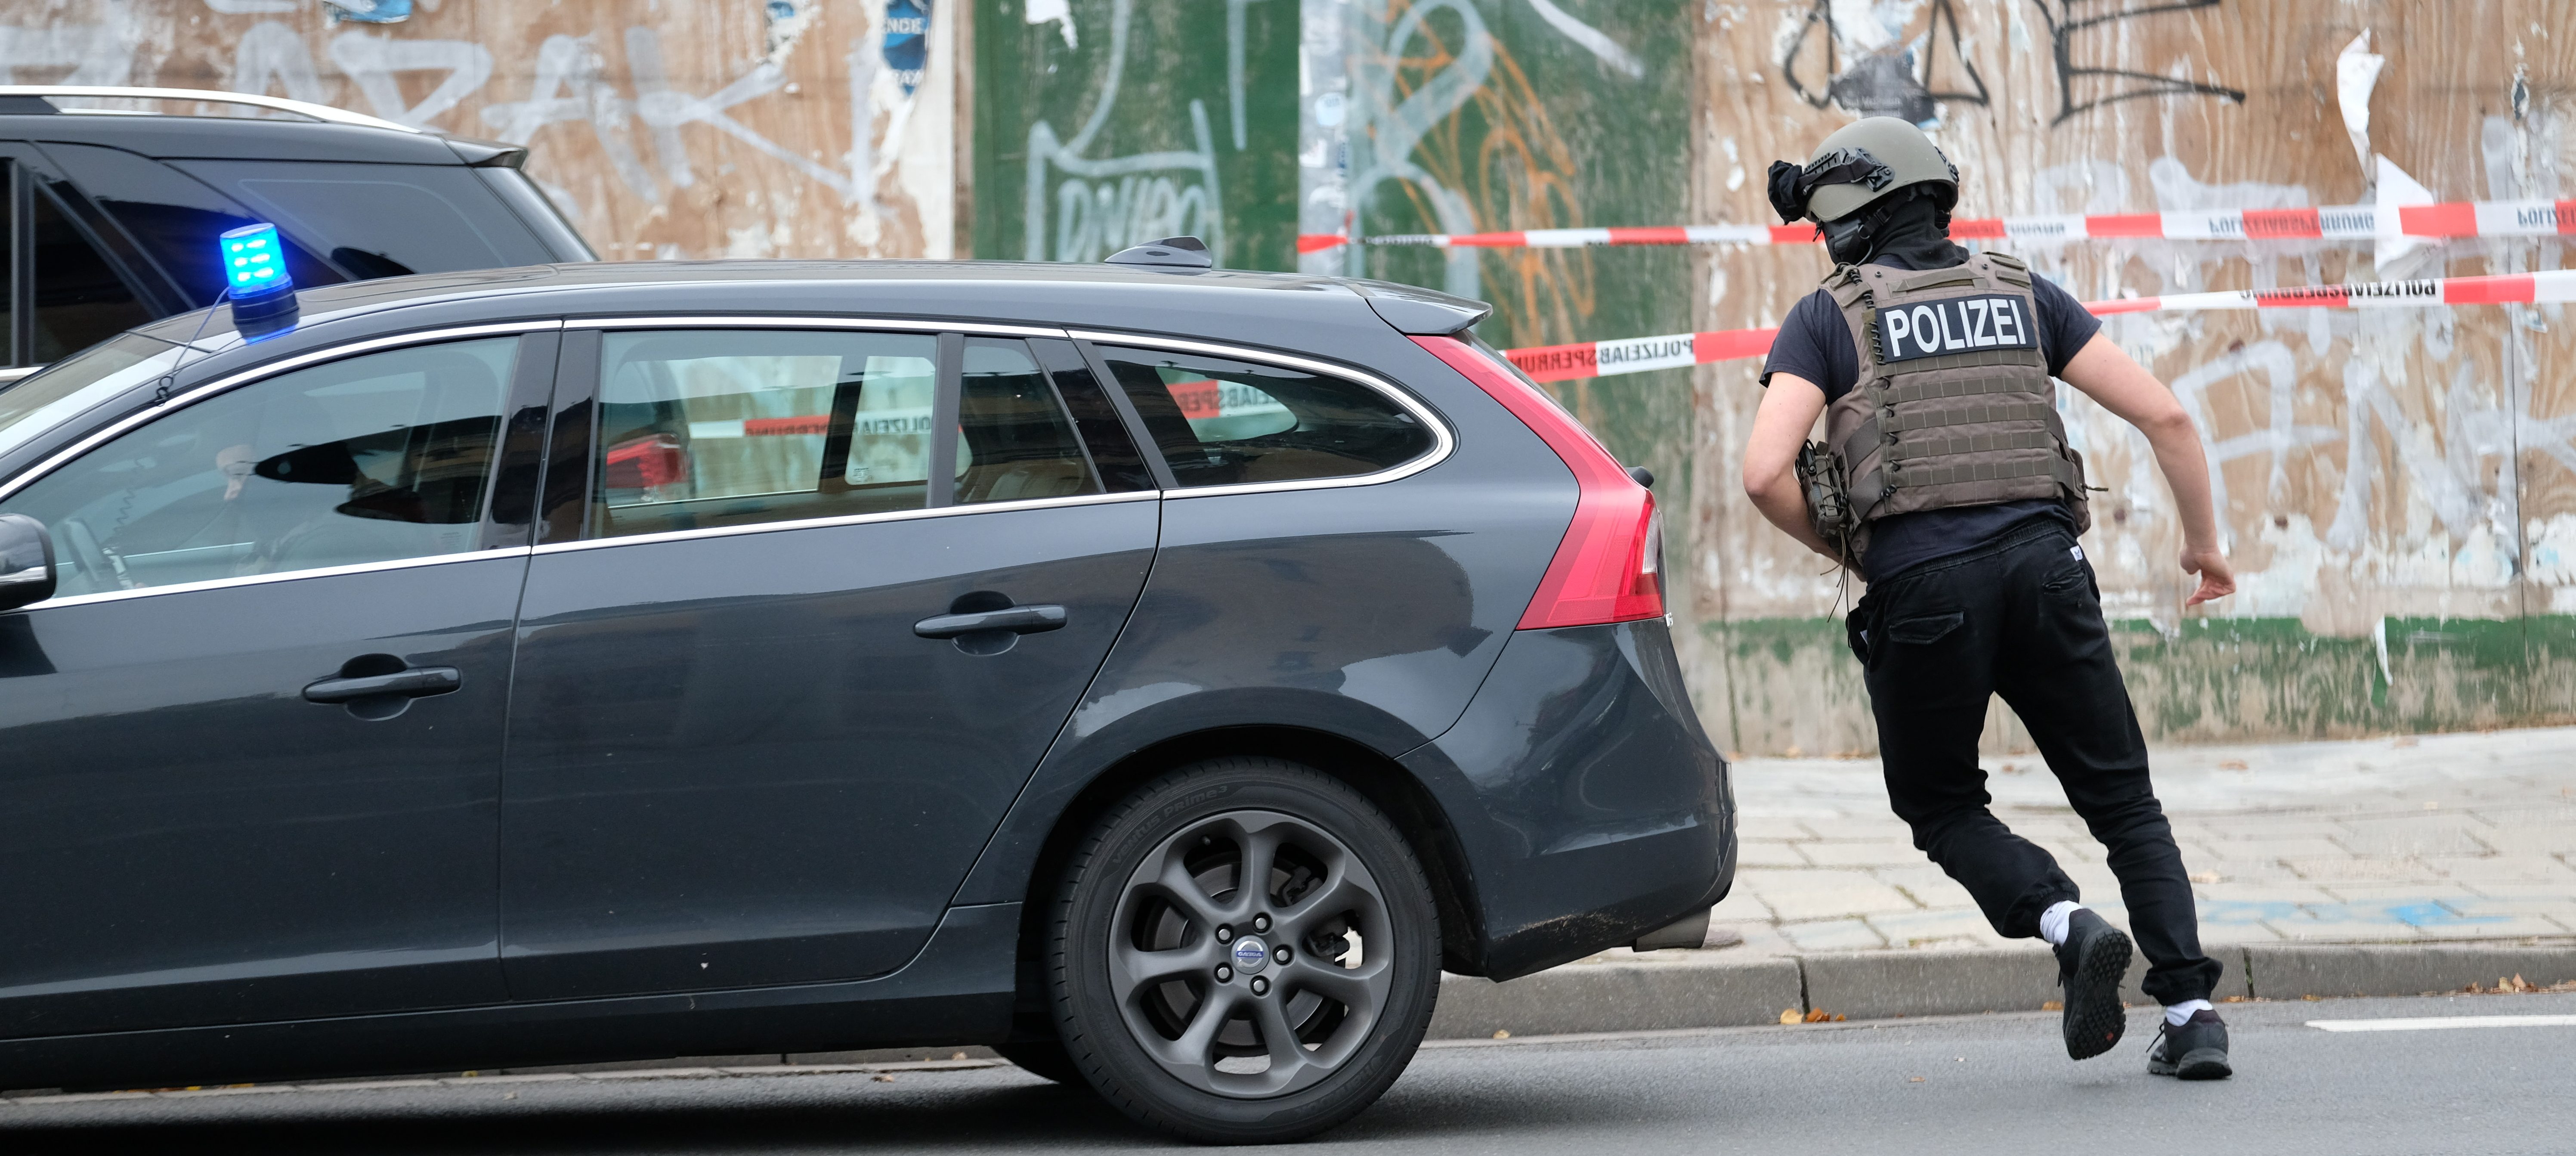 Amoklage in Halle: Zwei Menschen erschossen – erste Festnahme